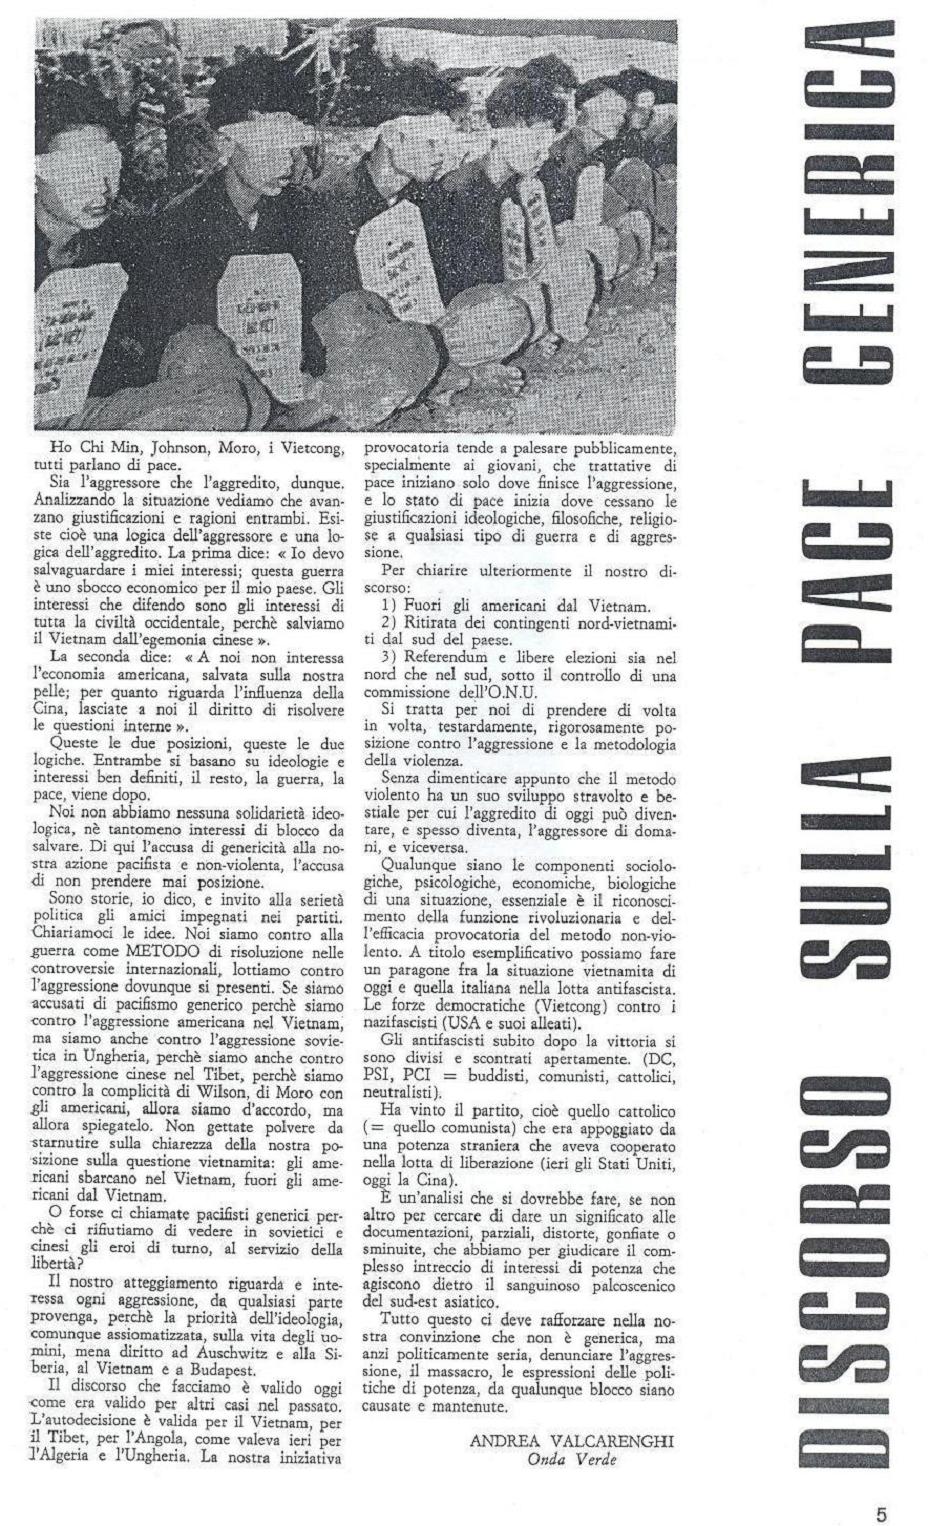 Il terzo numero della rivista Mondo Beat - Tiratura copie 4.000 - Datato 1 marzo 1967